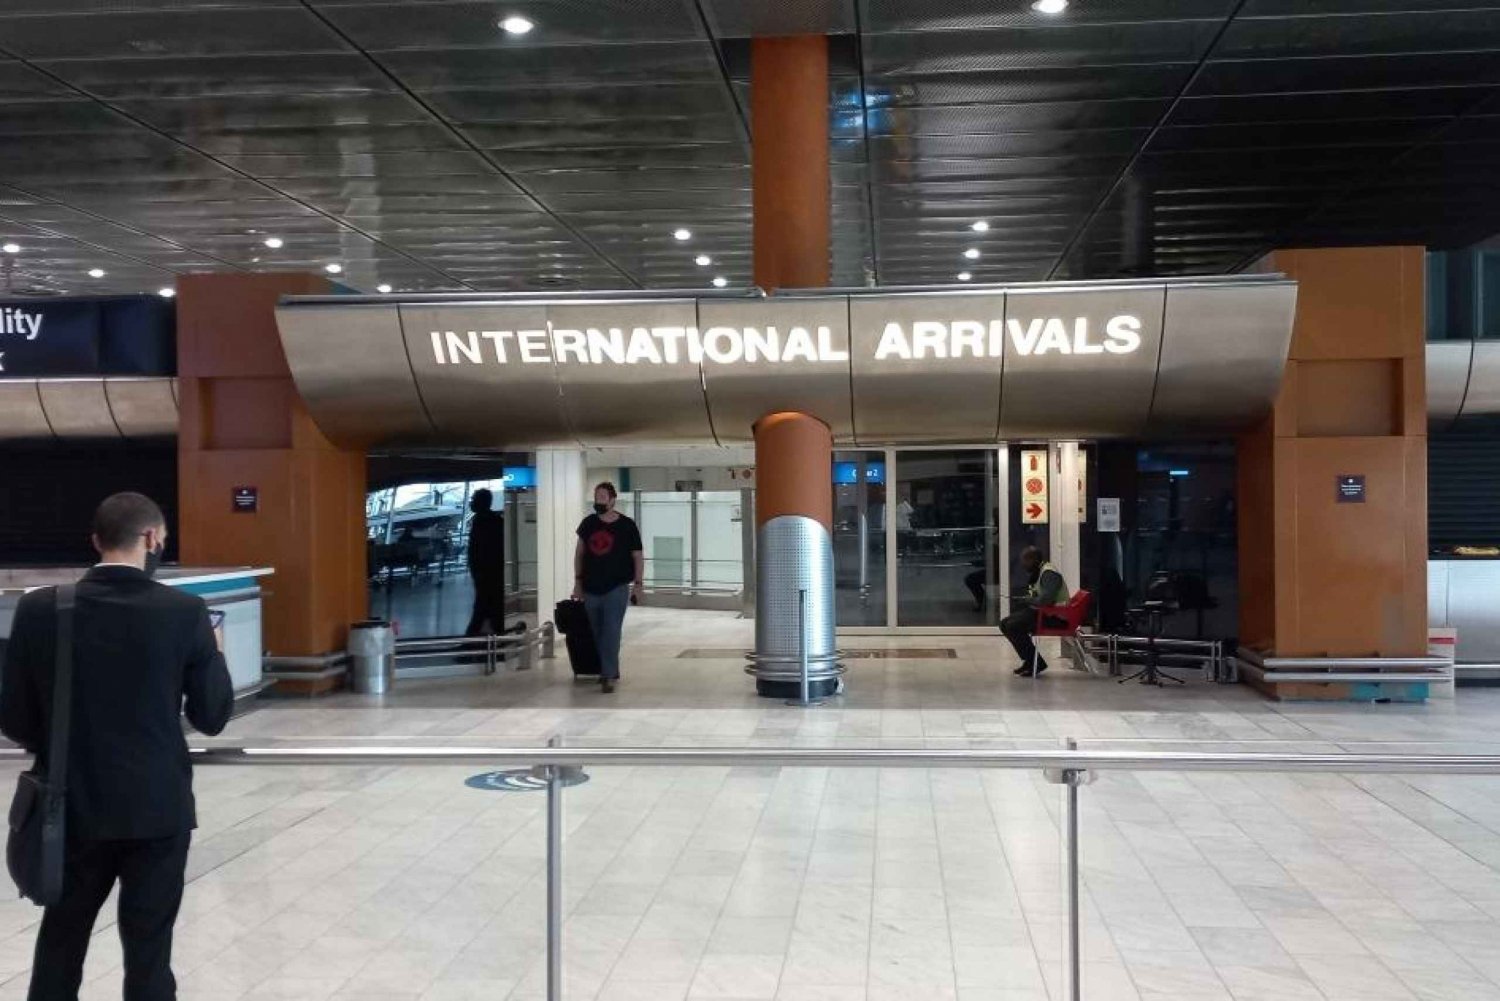 Privat transfer till Kapstadens internationella flygplats